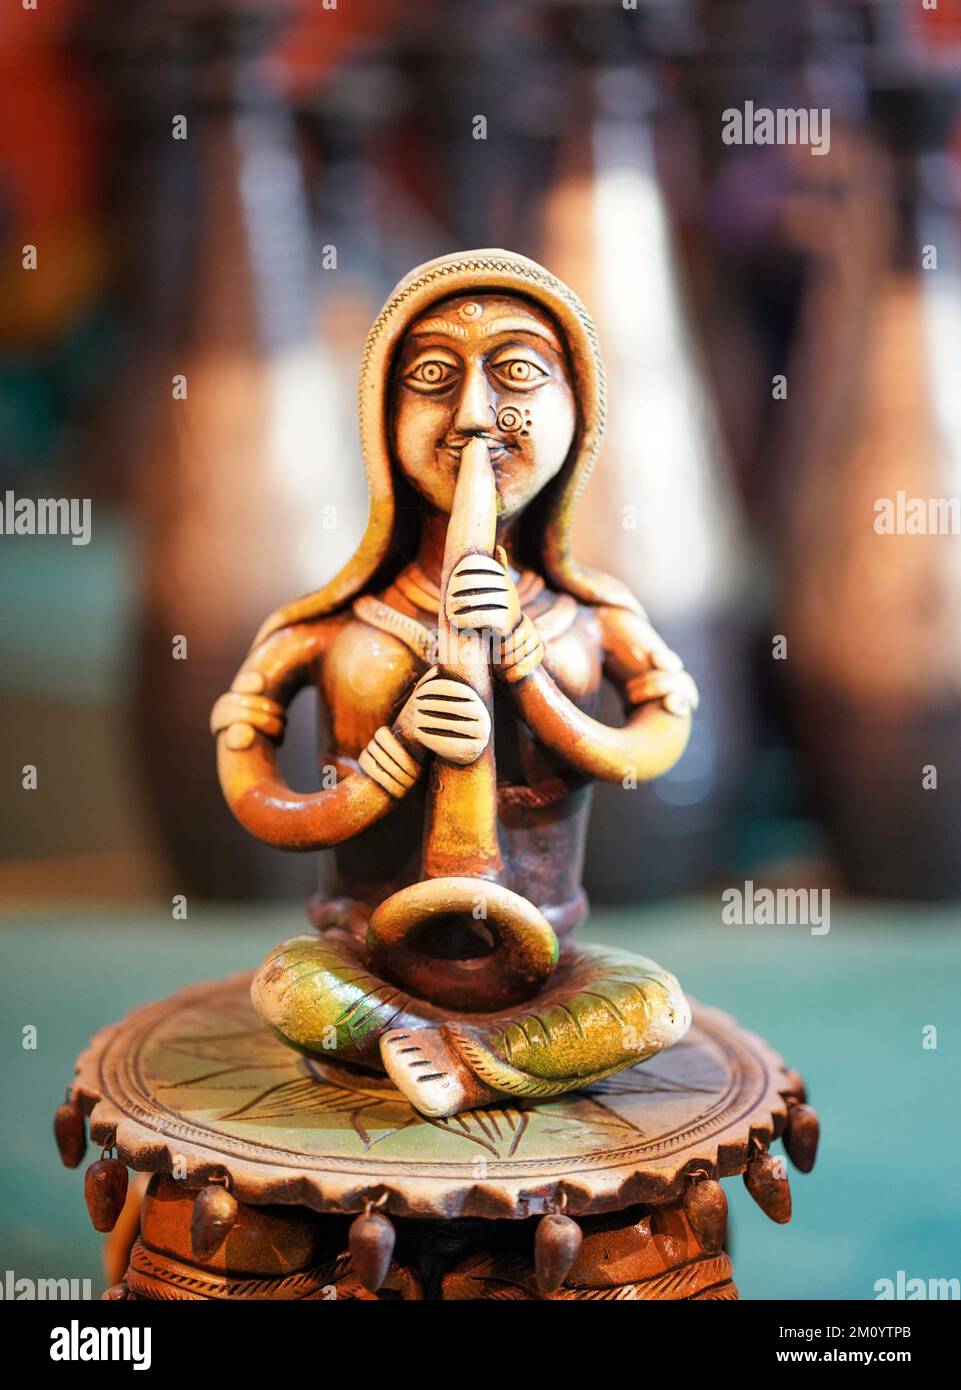 Artisanat, The Art of India, objets de démonstration et objets de collection de la statue en terre cuite, magnifiques poupées en argile de musiciens folkloriques miniatures qui se produisent dans un groupe de c Banque D'Images